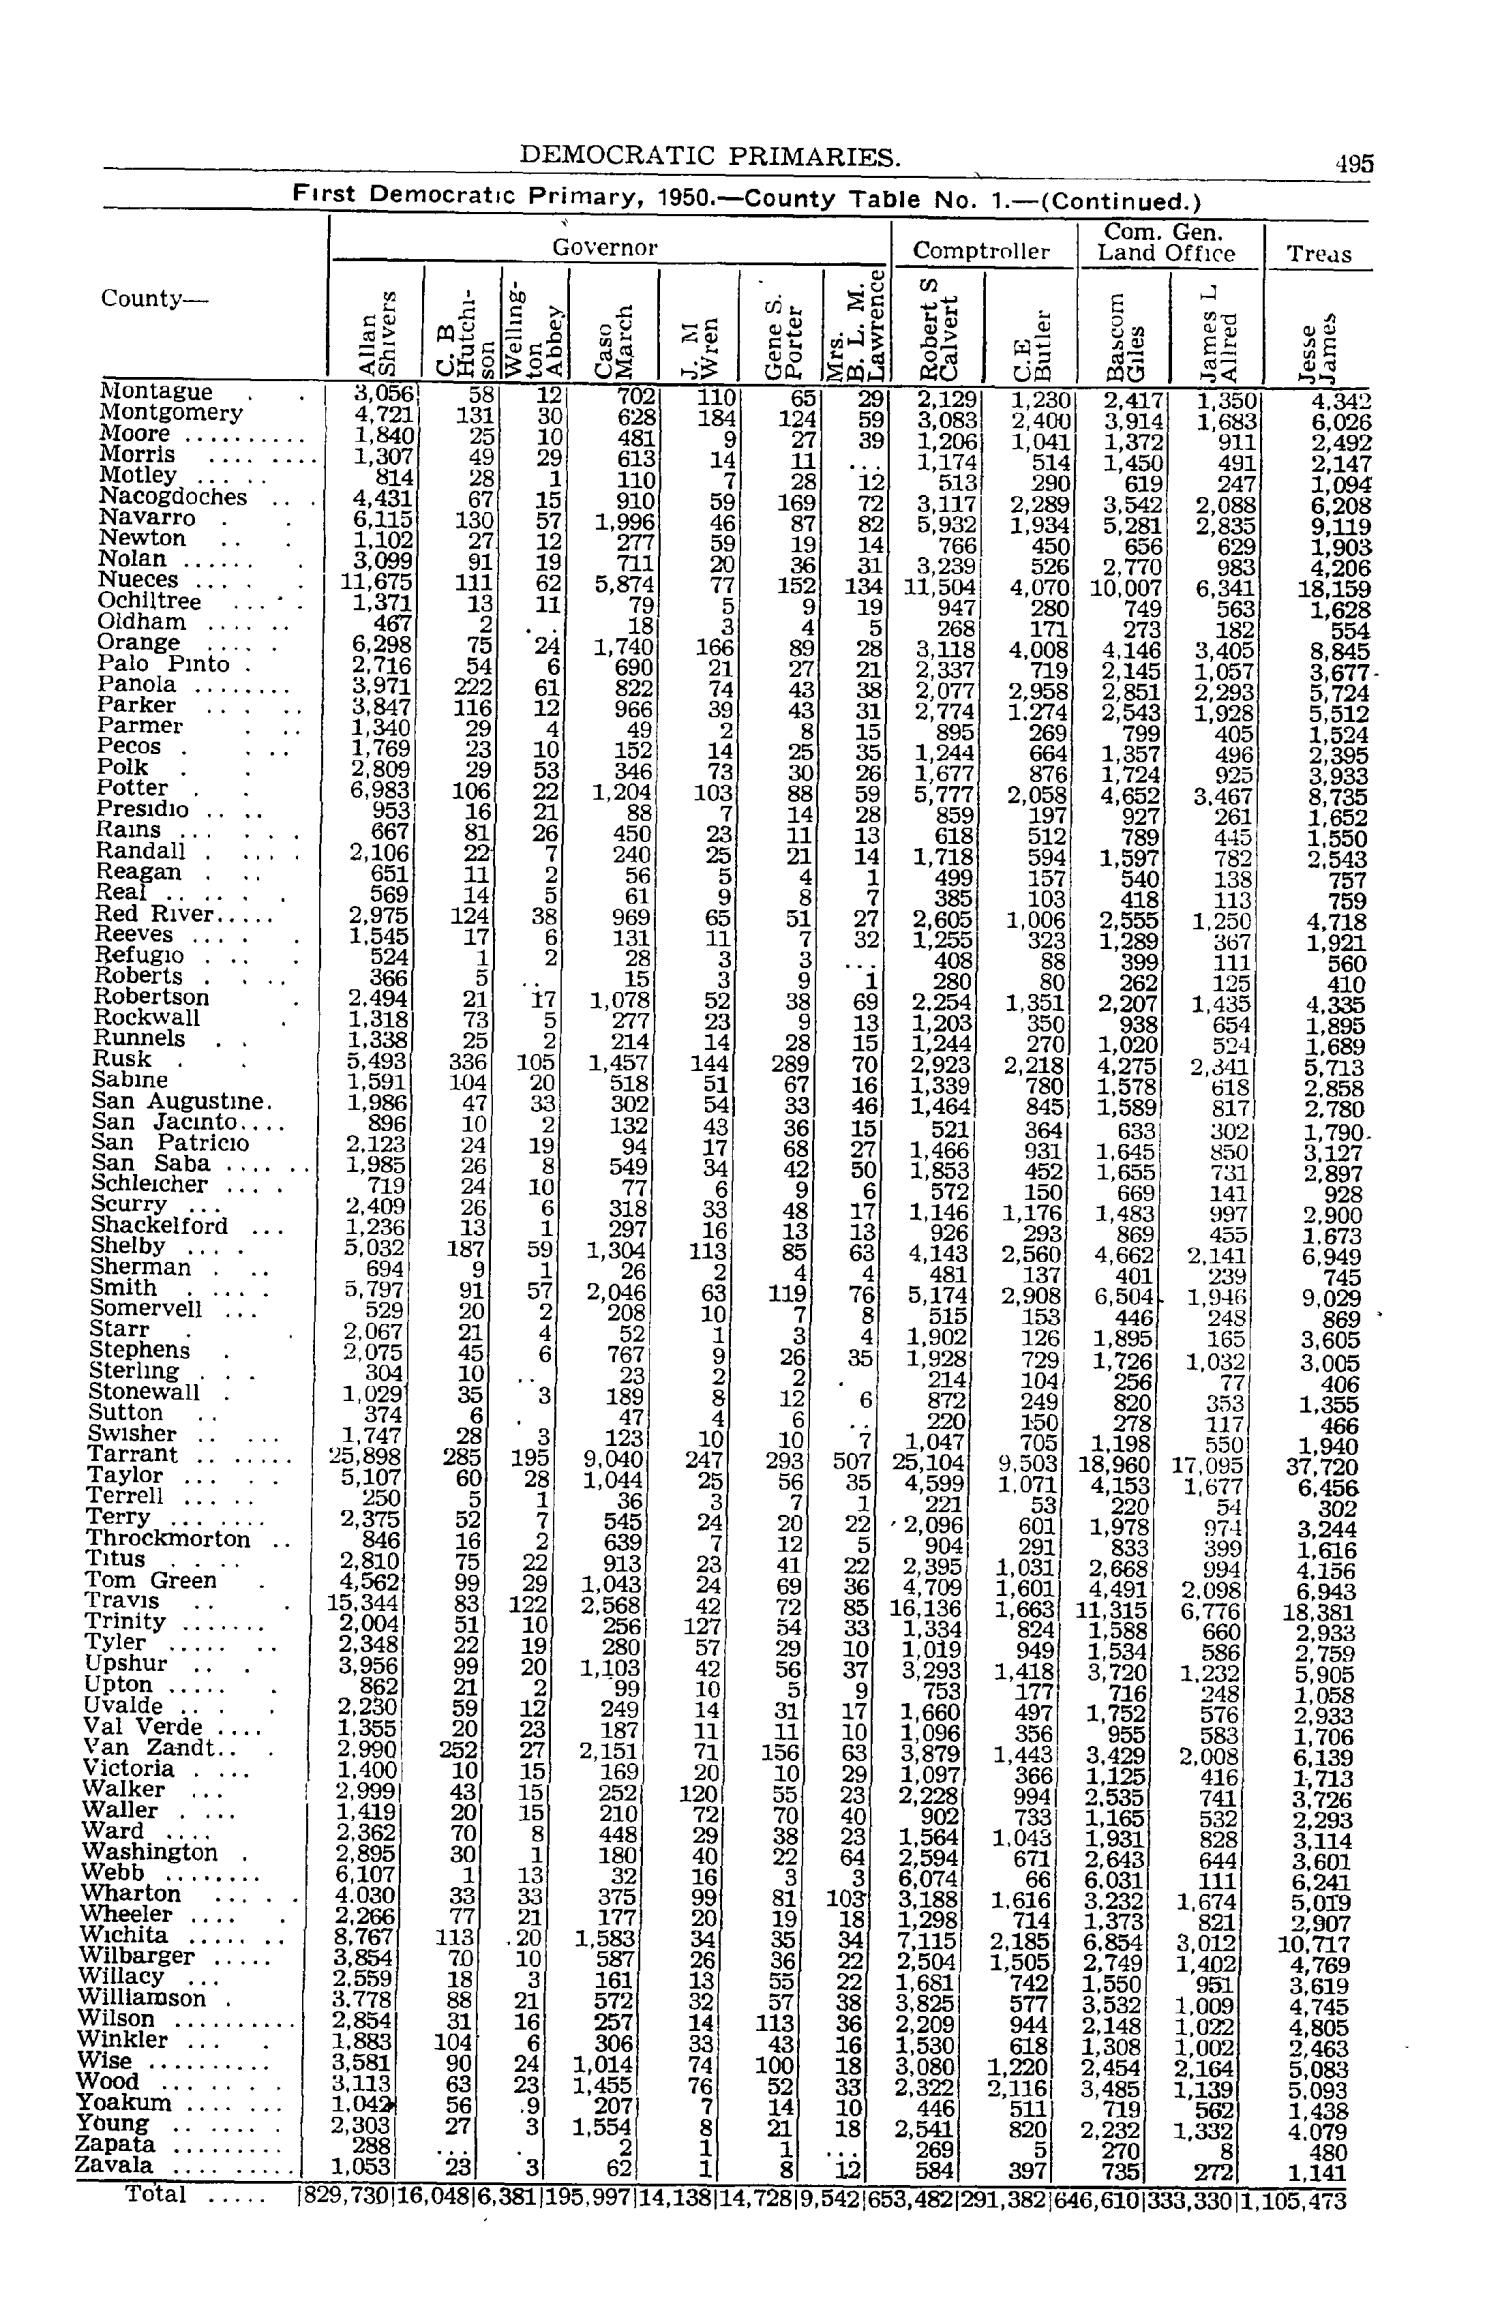 Texas Almanac, 1952-1953
                                                
                                                    495
                                                